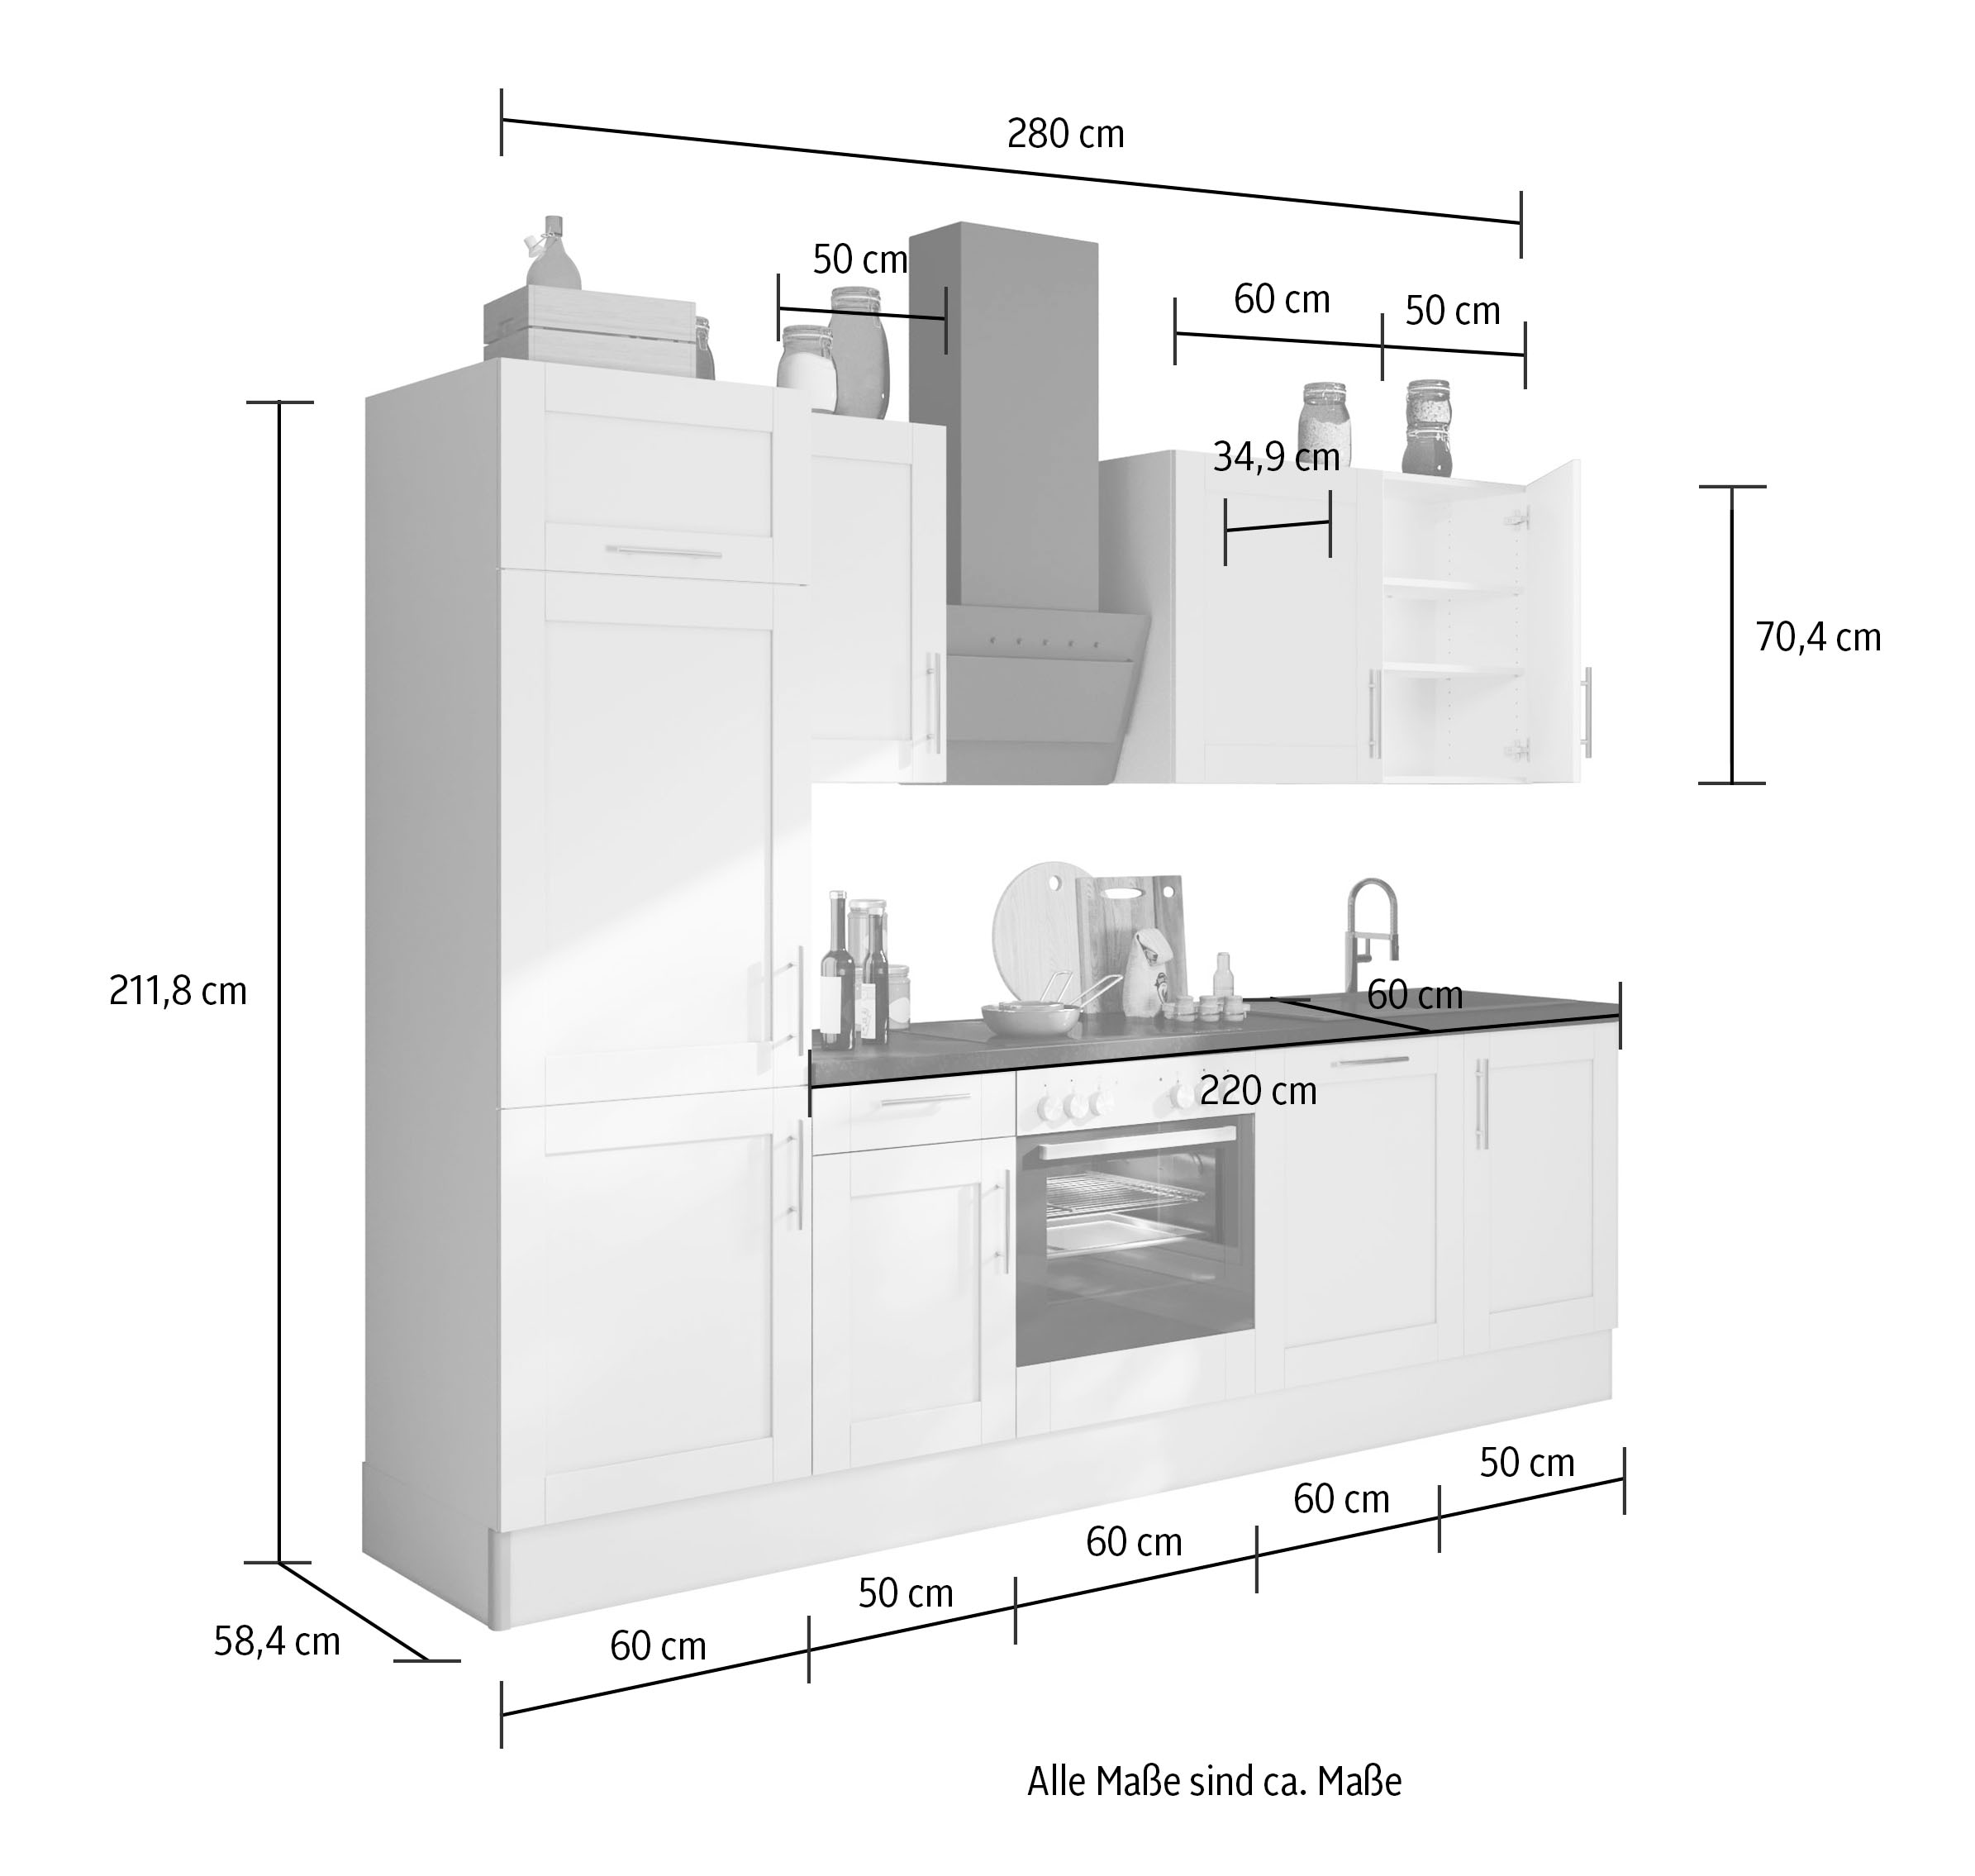 OPTIFIT Küche »Ahus«, 280 cm breit,wahlweise mit E-Geräten,MDF Fronten, Soft Close Funktion